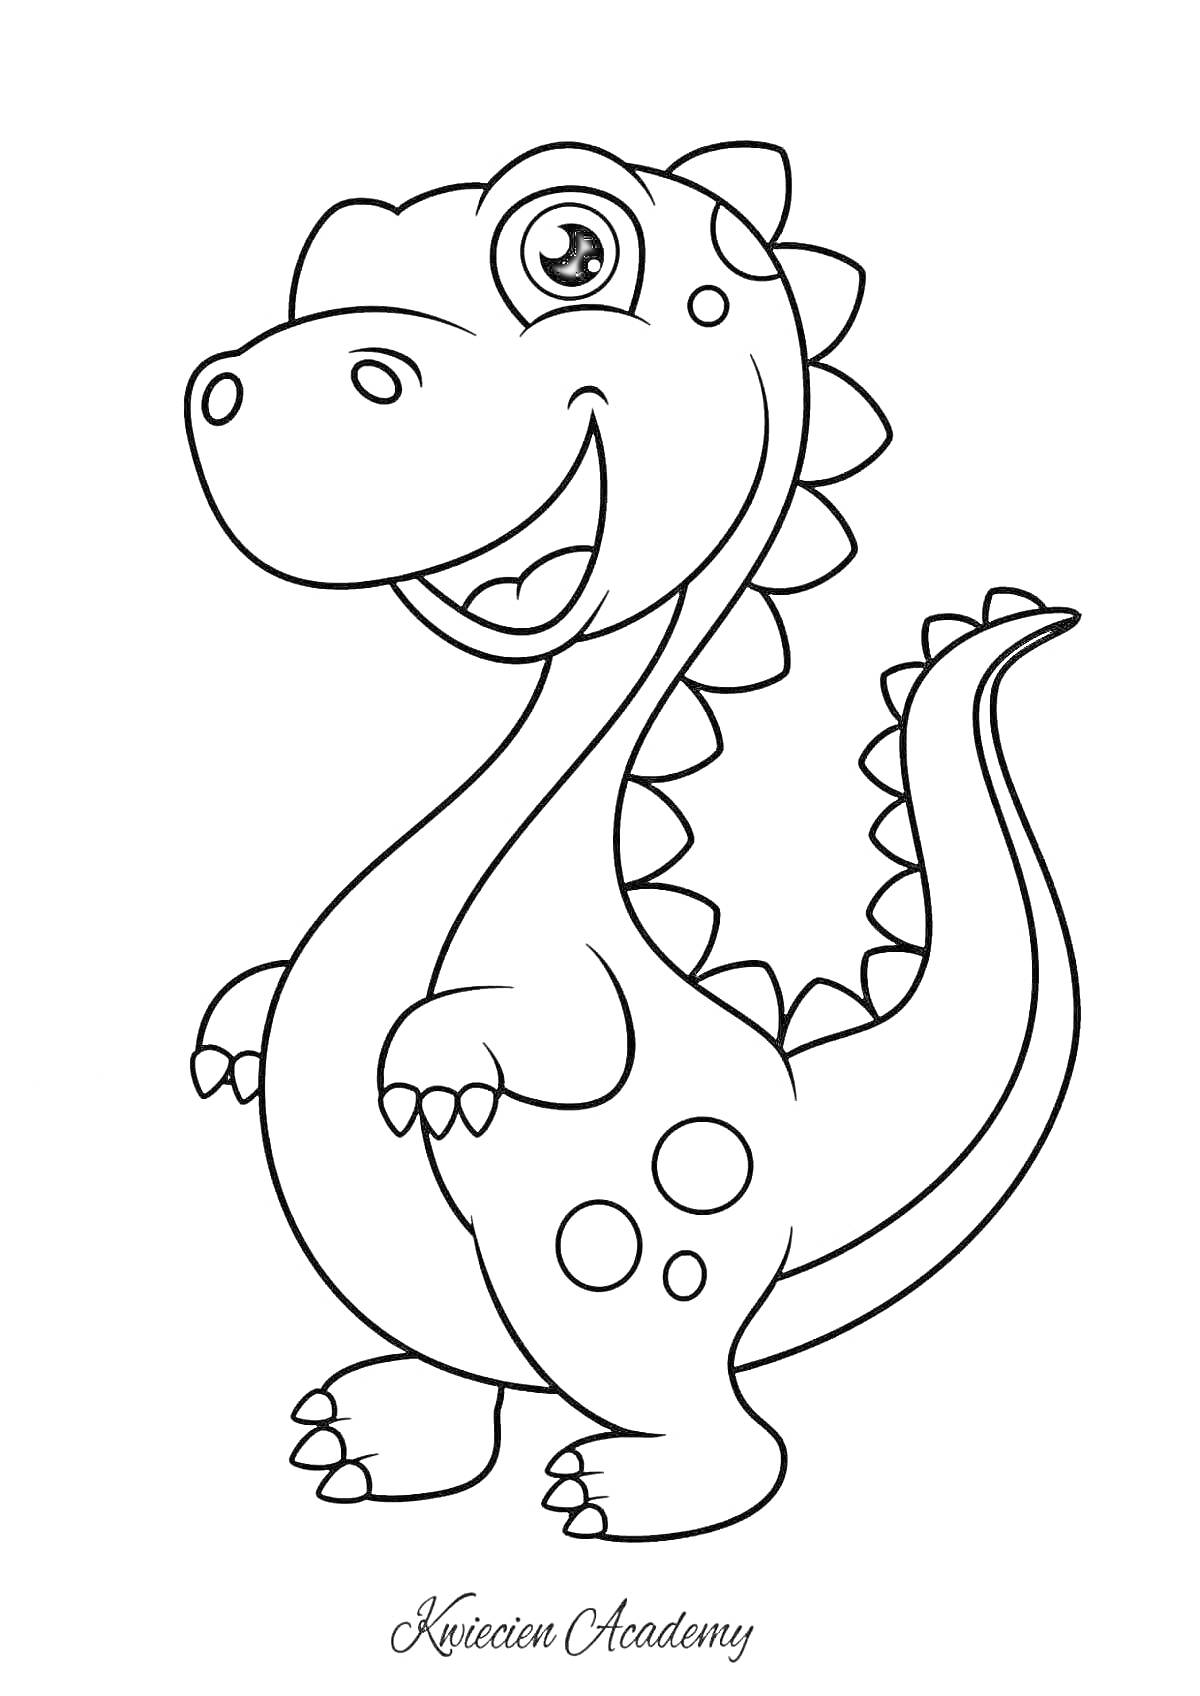 Динозаврик с пятнами, улыбающийся, стоящий на задних лапах